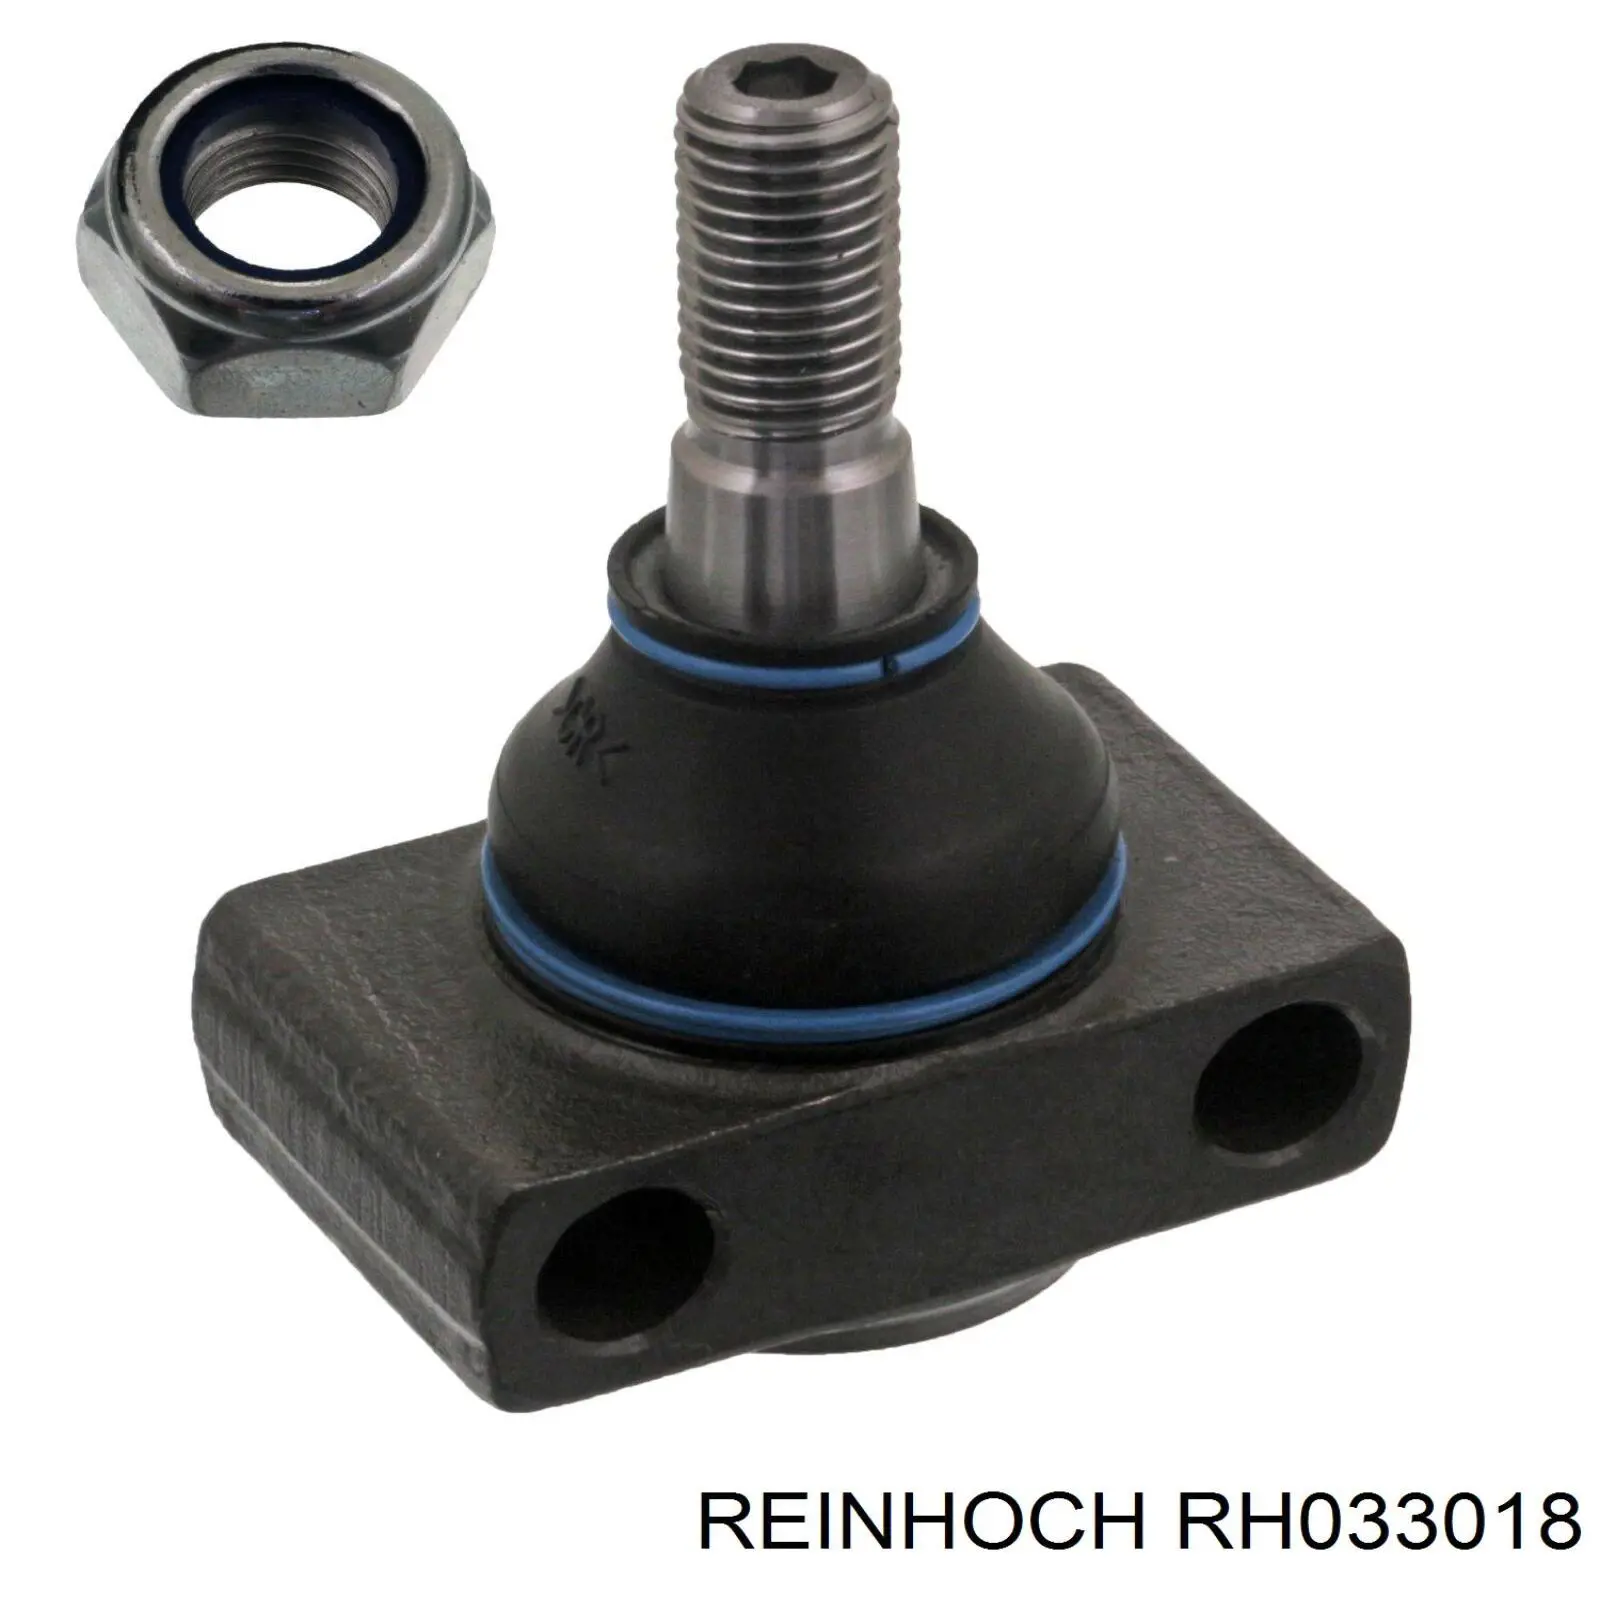 RH033018 Reinhoch шаровая опора нижняя